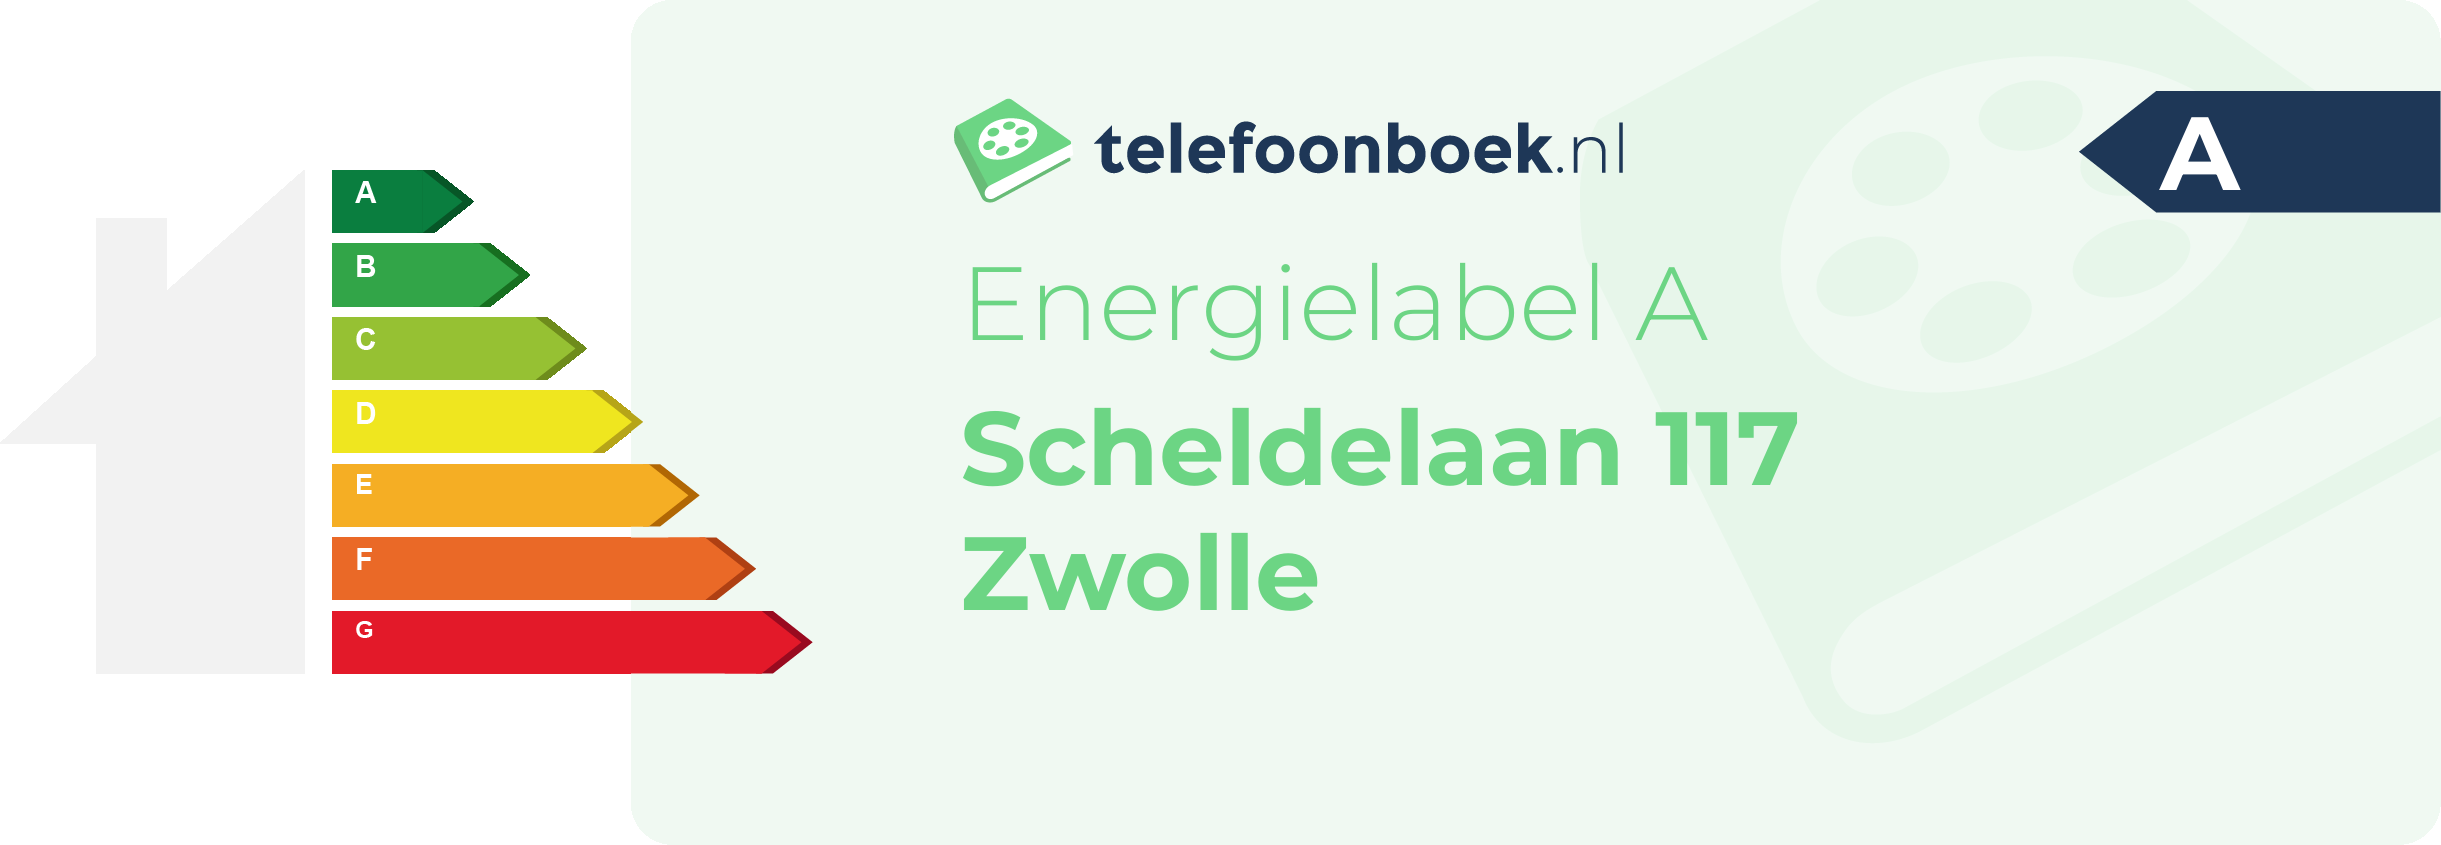 Energielabel Scheldelaan 117 Zwolle